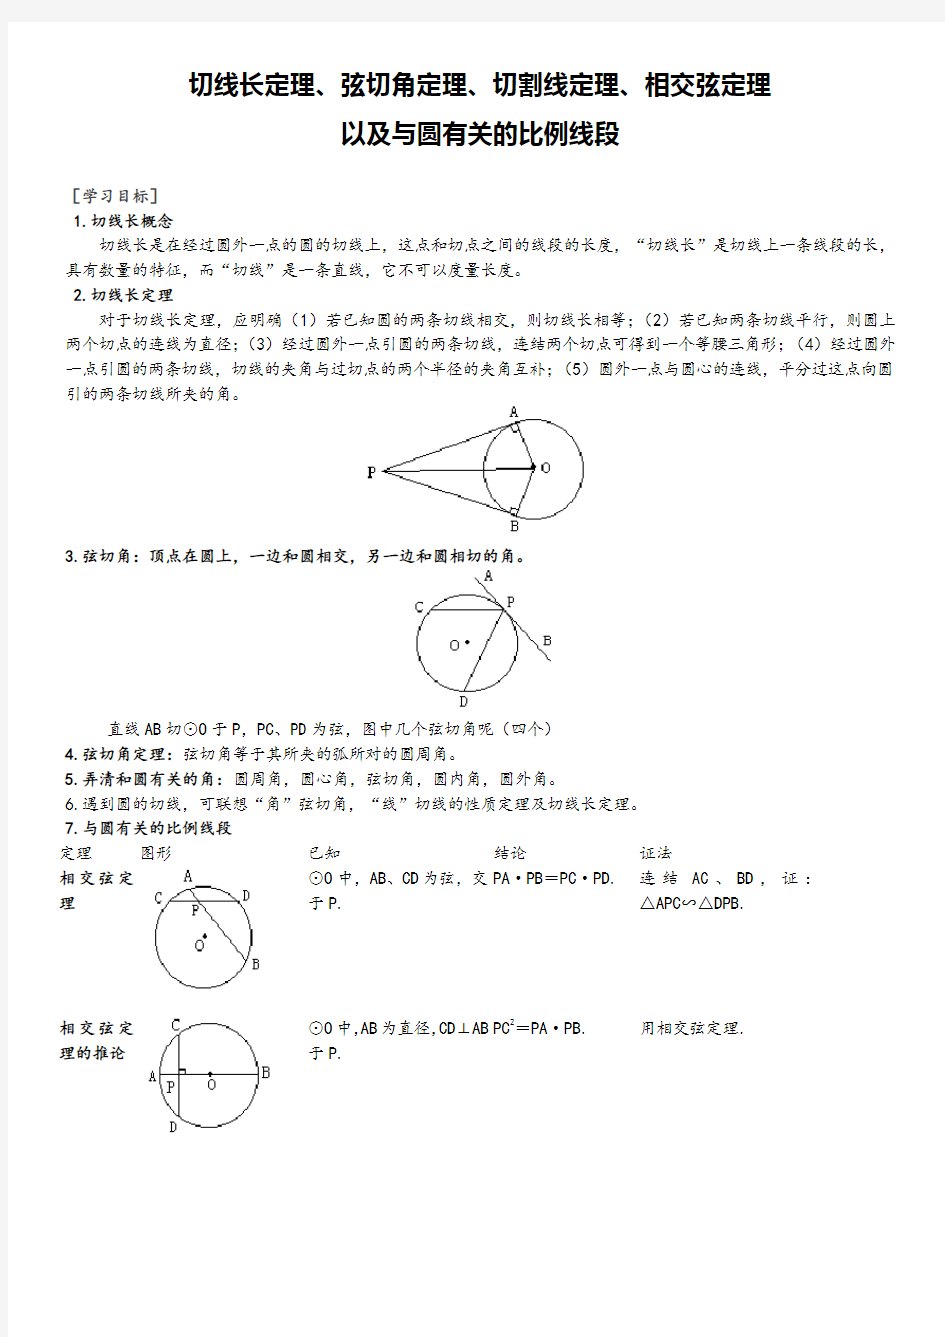 圆切线长定理、弦切角定理、切割线定理、相交弦定理